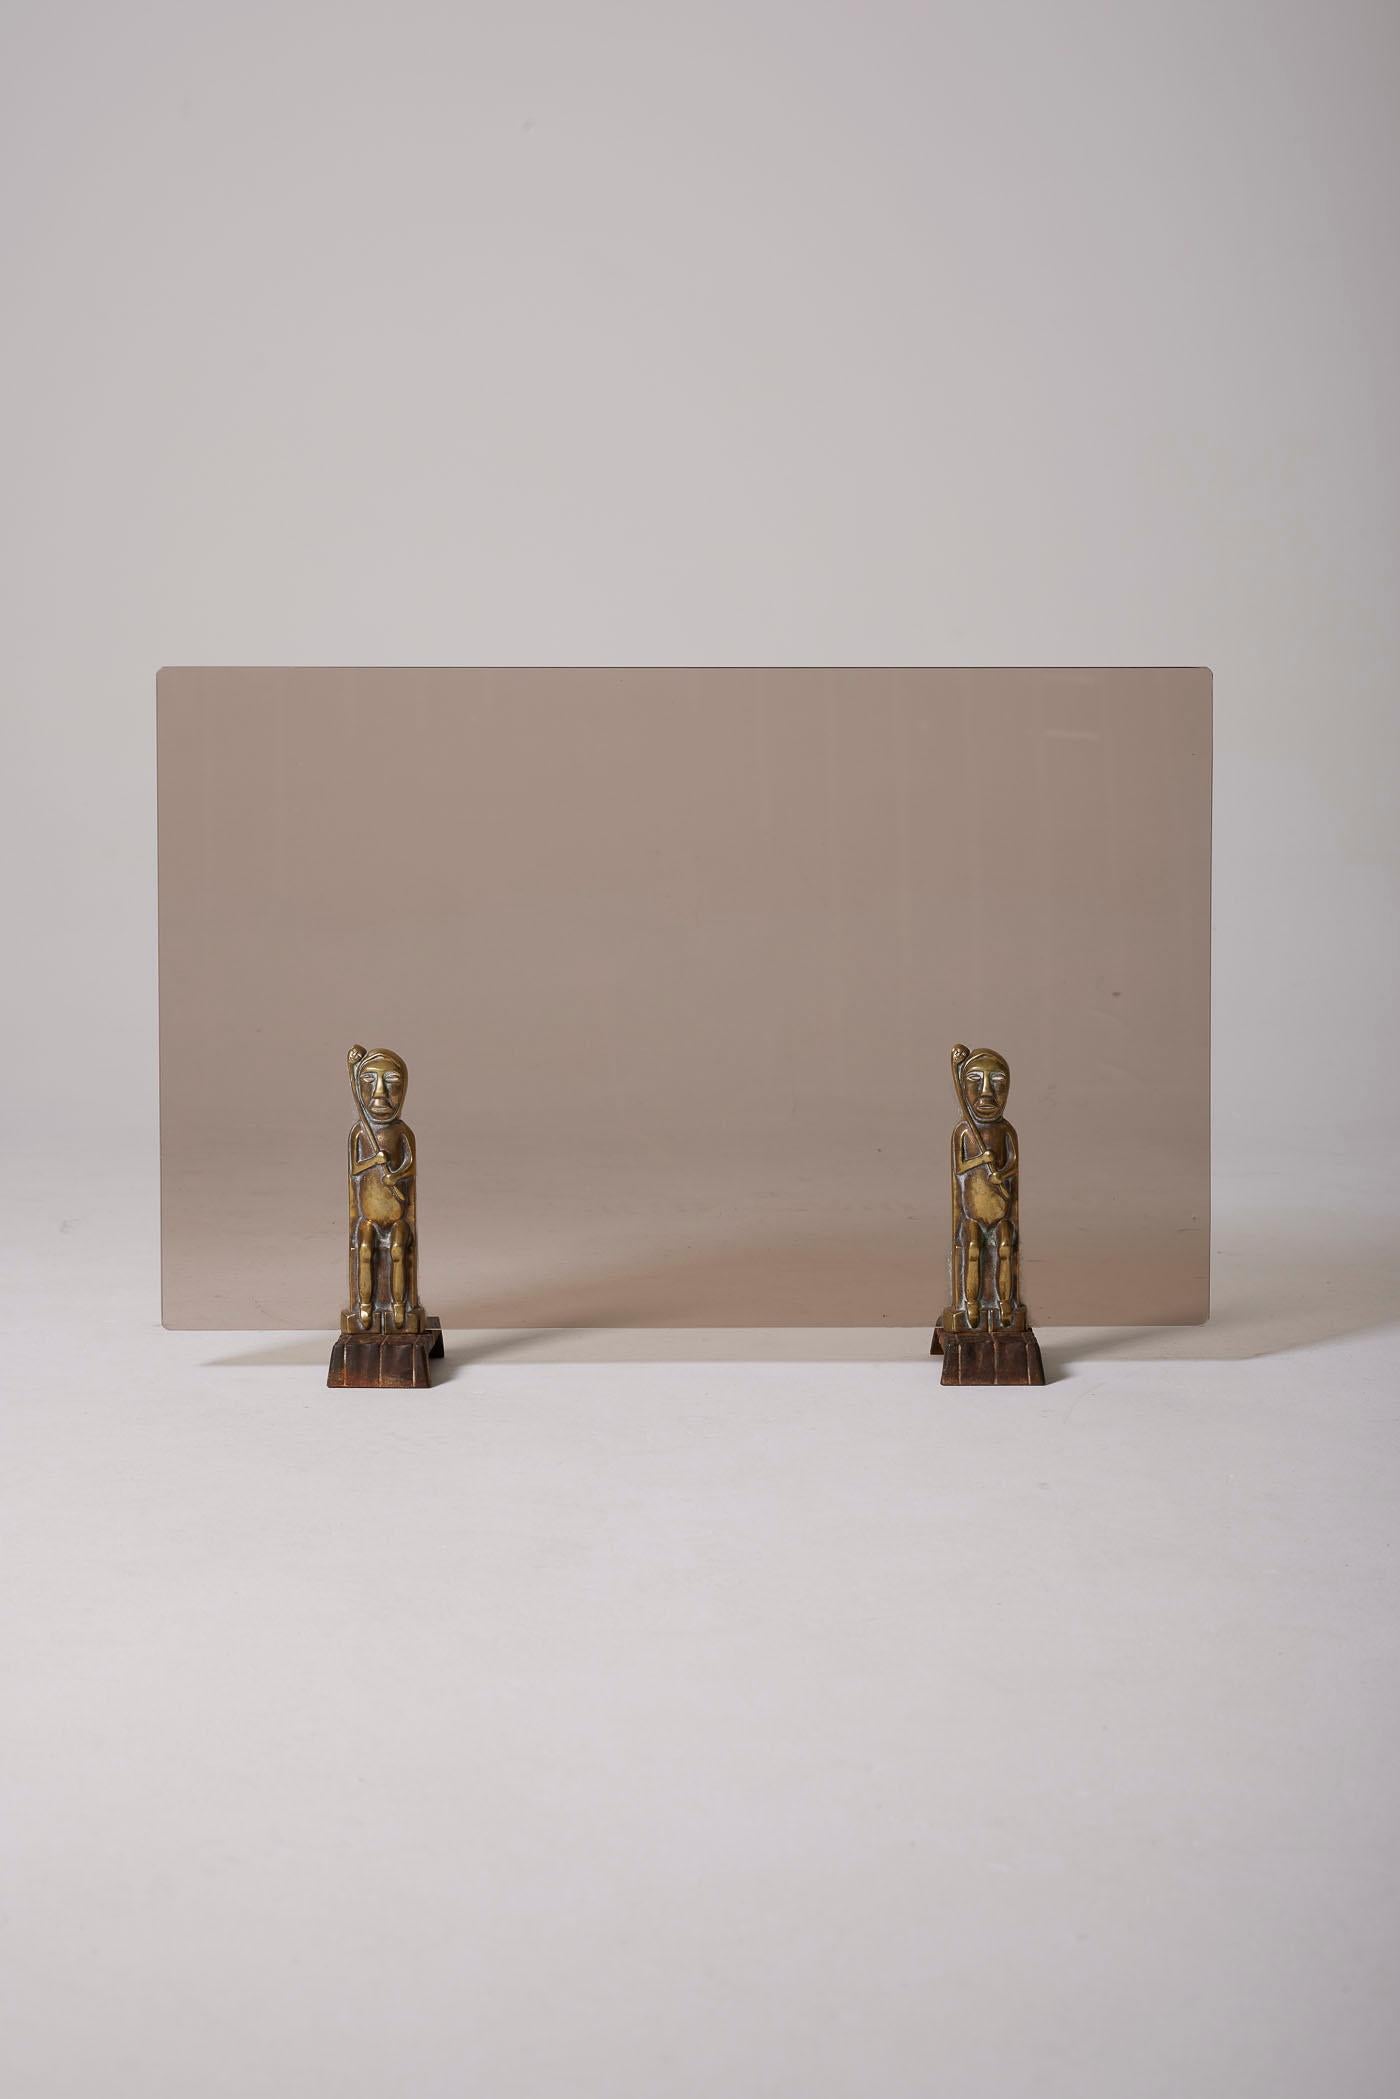 Kaminschirm und Kaminbesteck des Designers Anton Prinner (1902-1983) aus den 1930er Jahren. Der Kaminschirm ist aus Rauchglas und Bronze gefertigt. Dieses Kaminset zeigt vergoldete Bronzeskulpturen von Schamanen des ungarischen Designers. Das